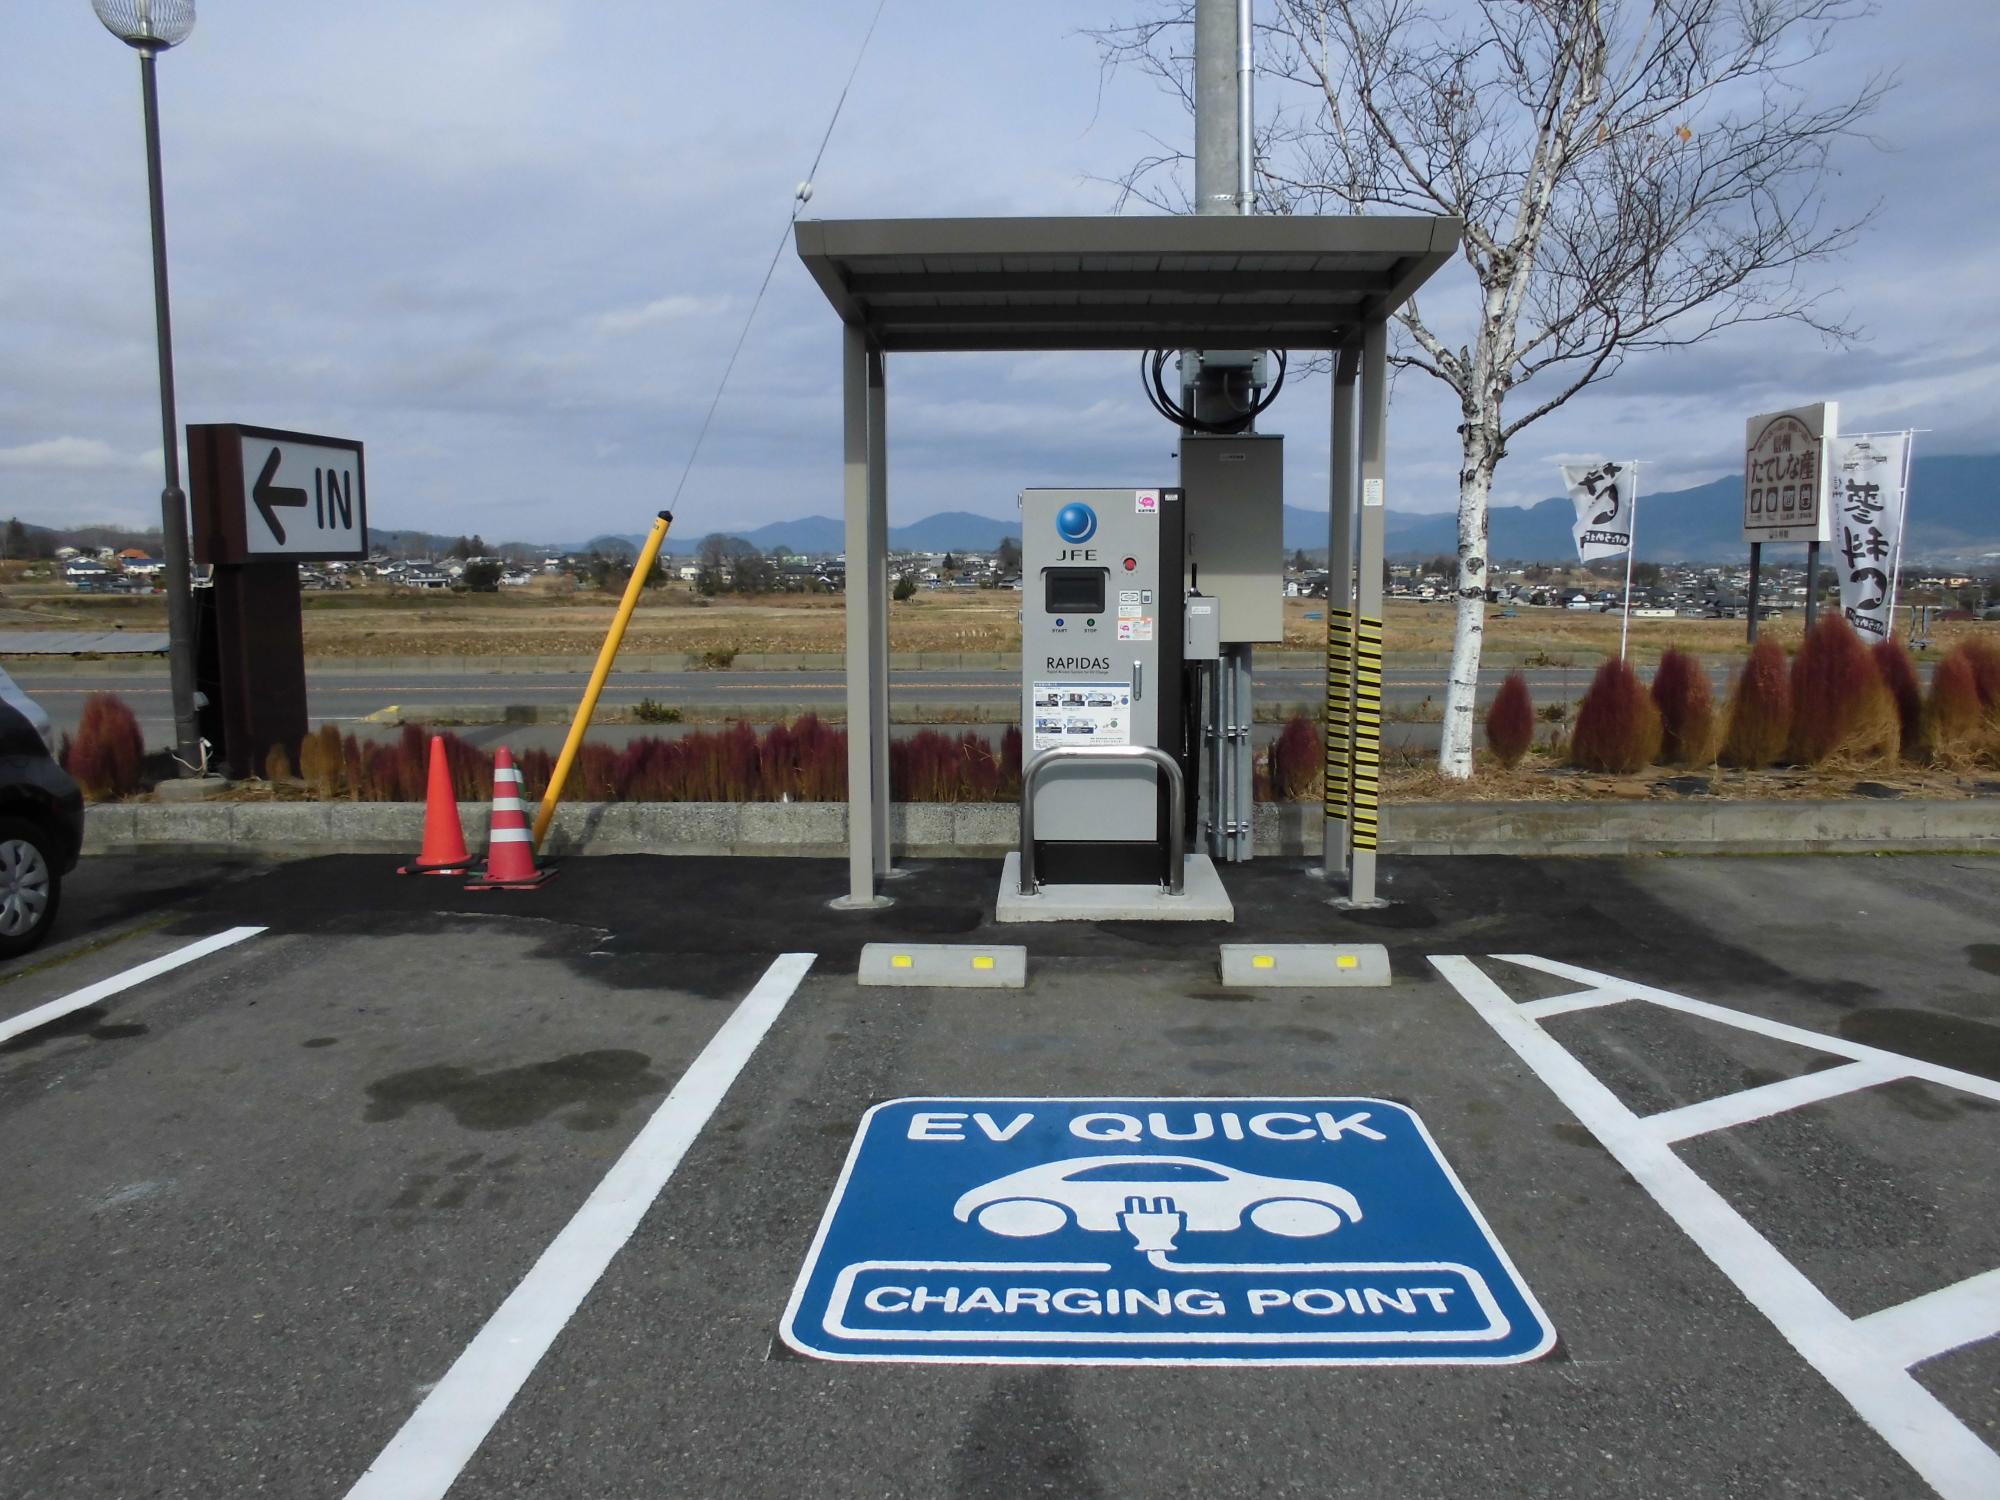 駐車スペースの地面に「EV QUICK CHARGING POINT」の文字と車のイラストが描かれ、奥に電動車両用急速充電器が設置されている写真